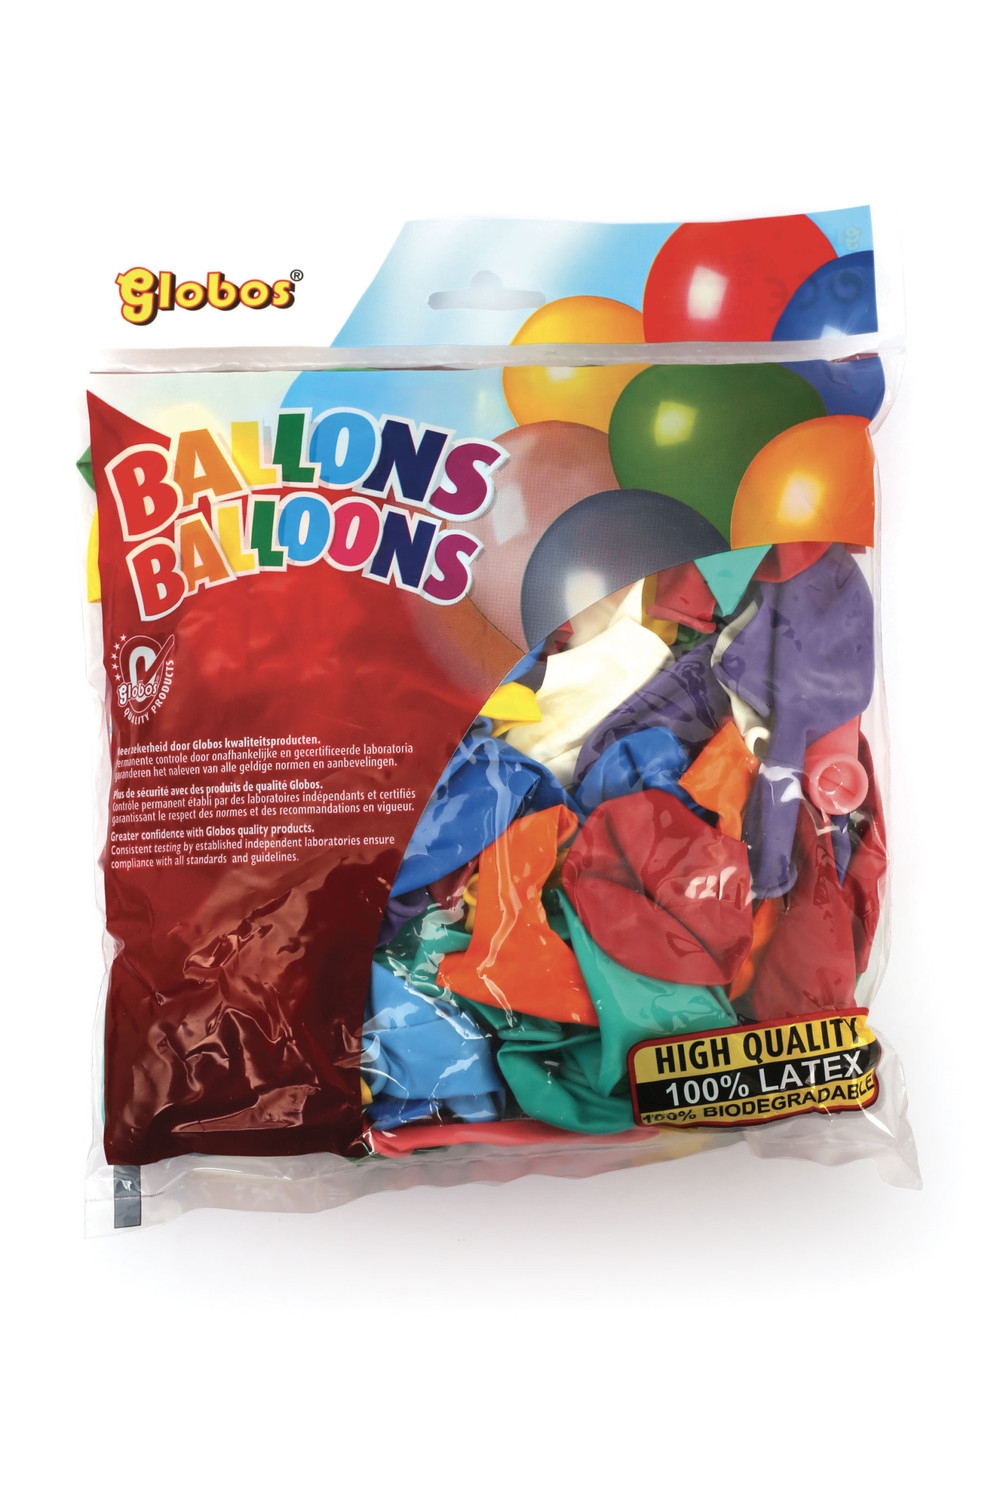 Ballons 100 Pcs, Lot de Ballon Anniversaire Ballon Gonflable